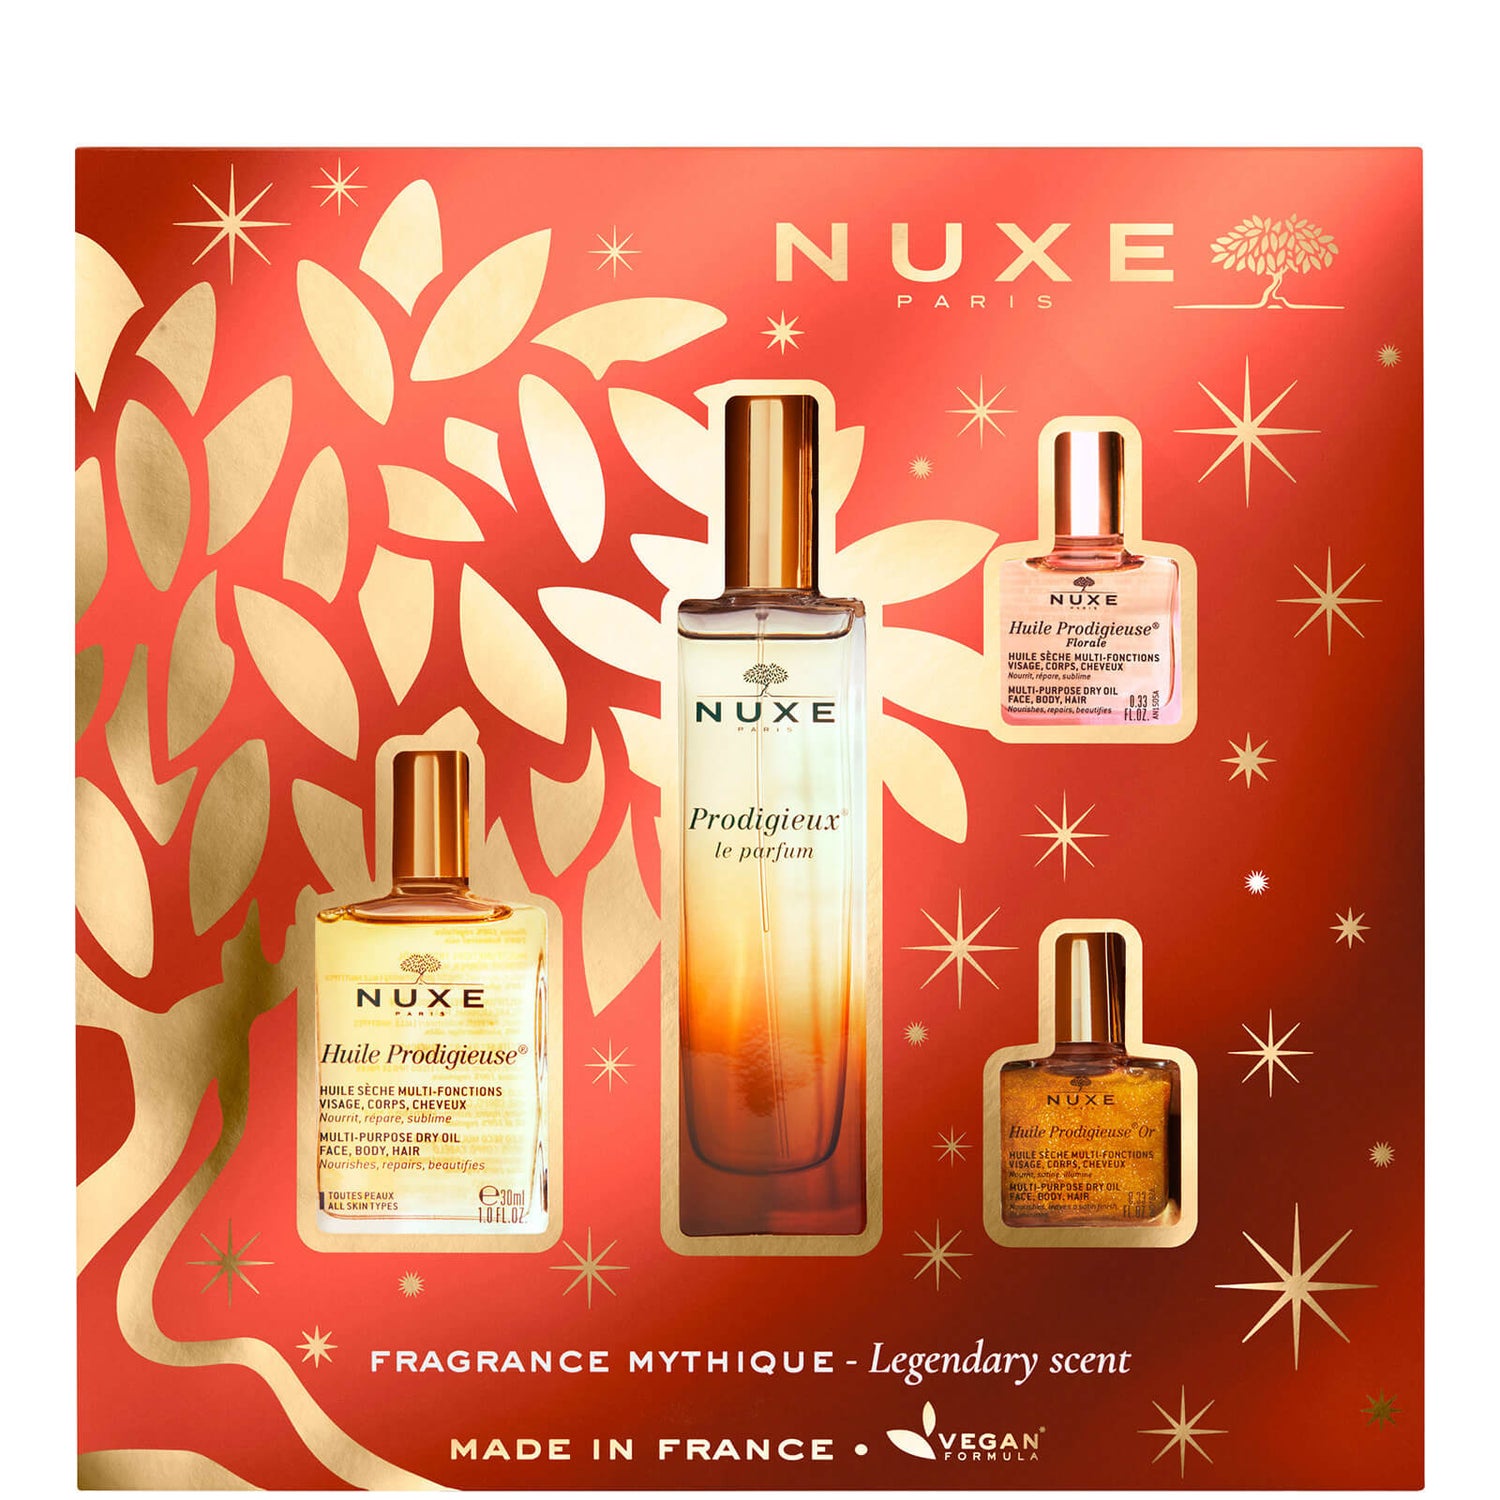 NUXE Prodigieux Le Parfum The Legendary Scent礼品套装